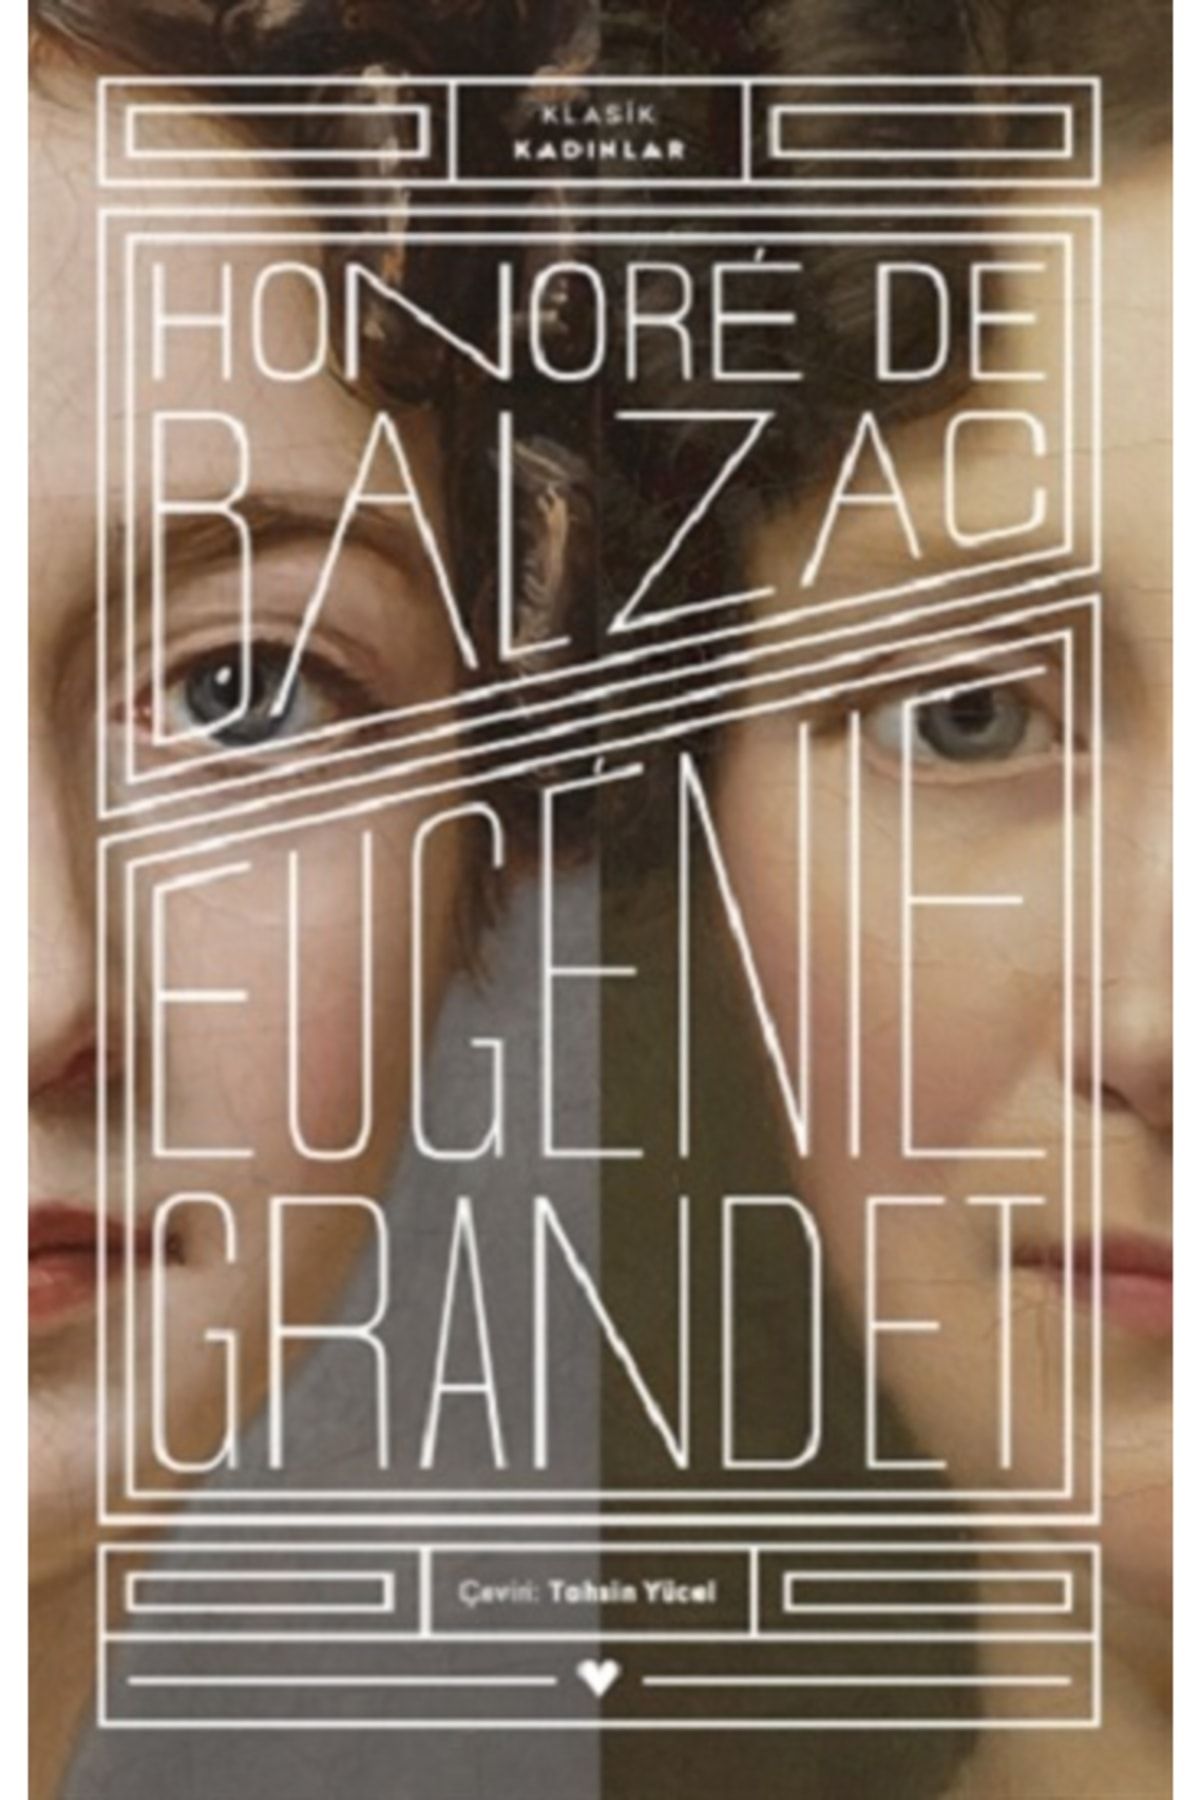 Can Sanat Yayınları Eugenie Grandet - Klasik Kadınlar - Honore De Balzac